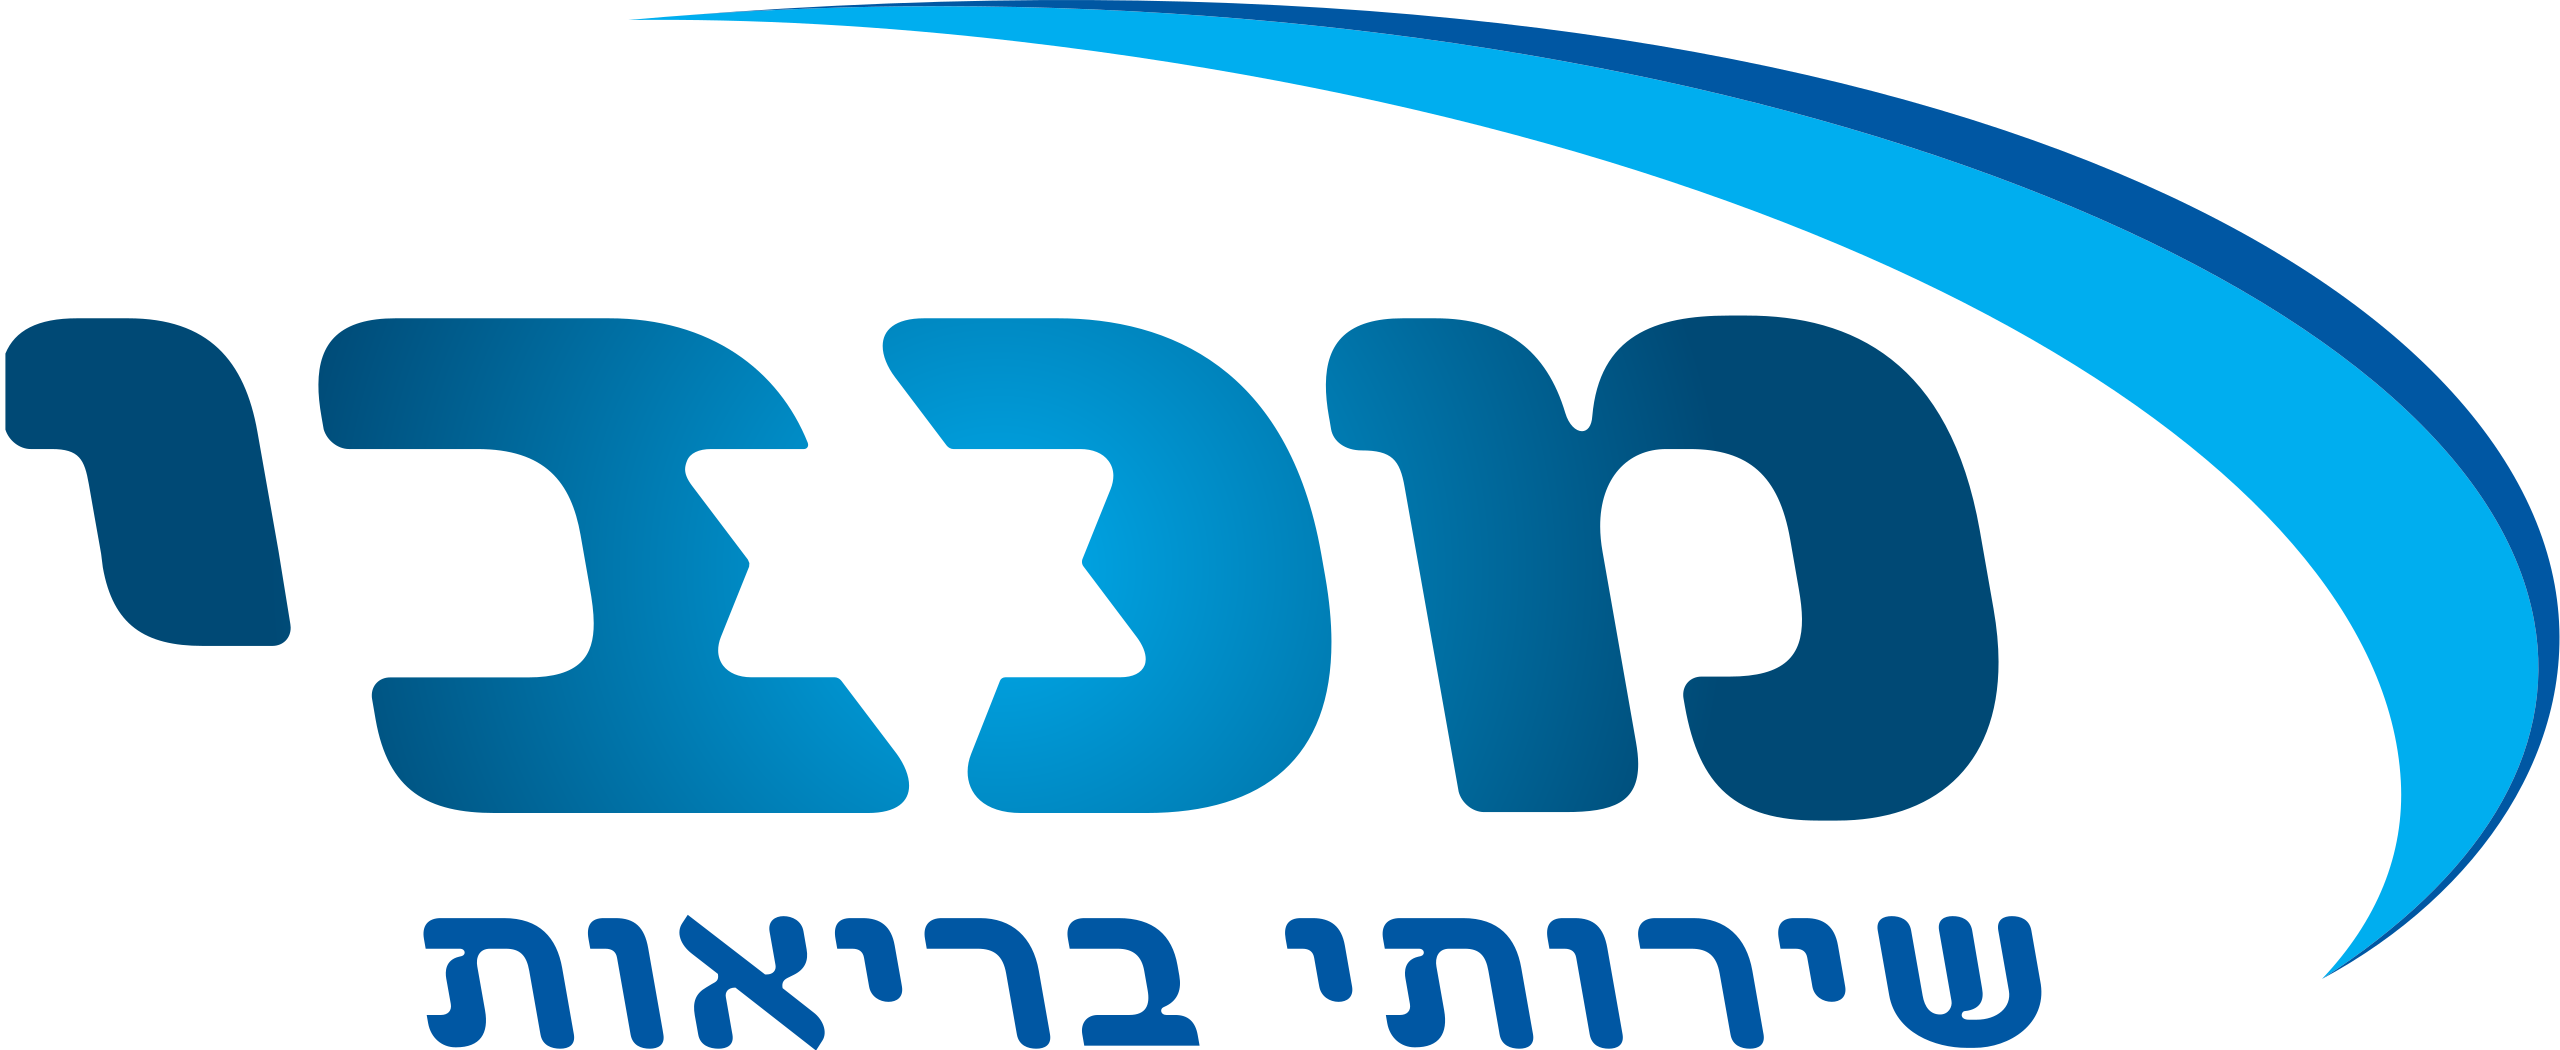 Maccabi Health Care Services